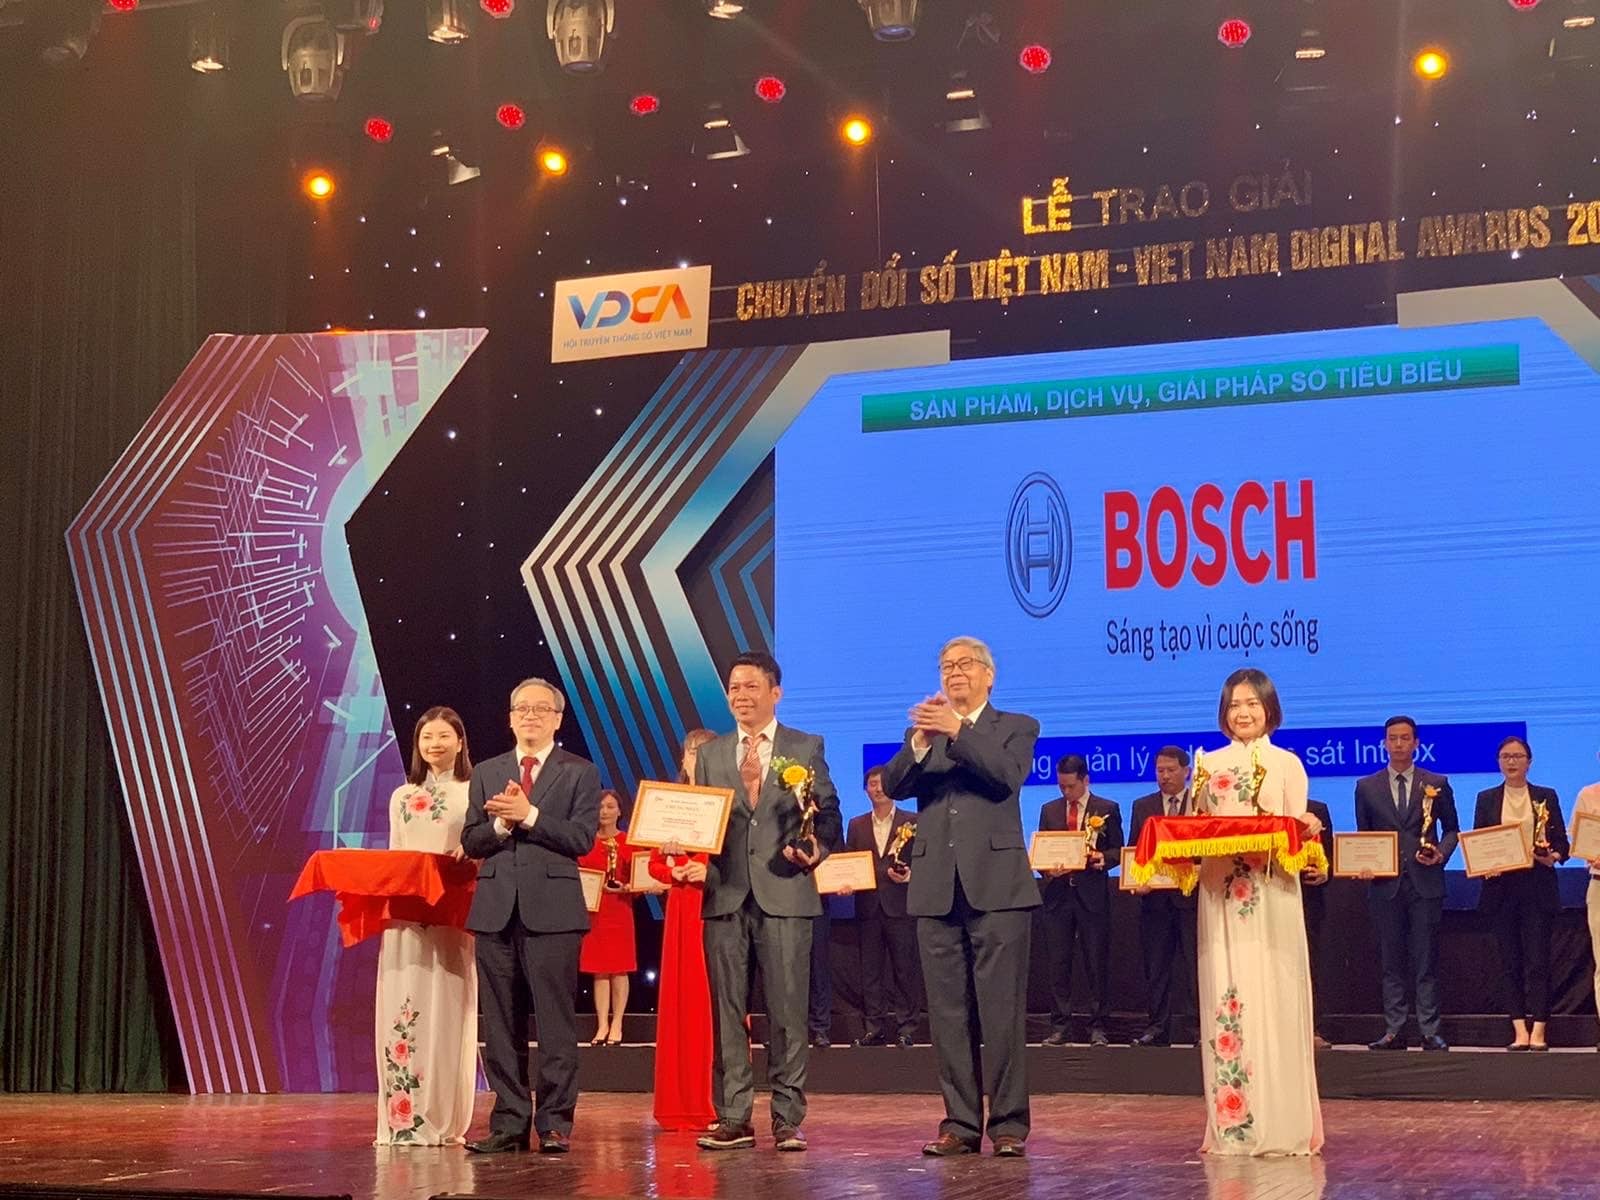 Bosch chính thức ra mắt Nền tảng quản lý camera giám sát mở toàn phần đầu tiên trên toàn cầu